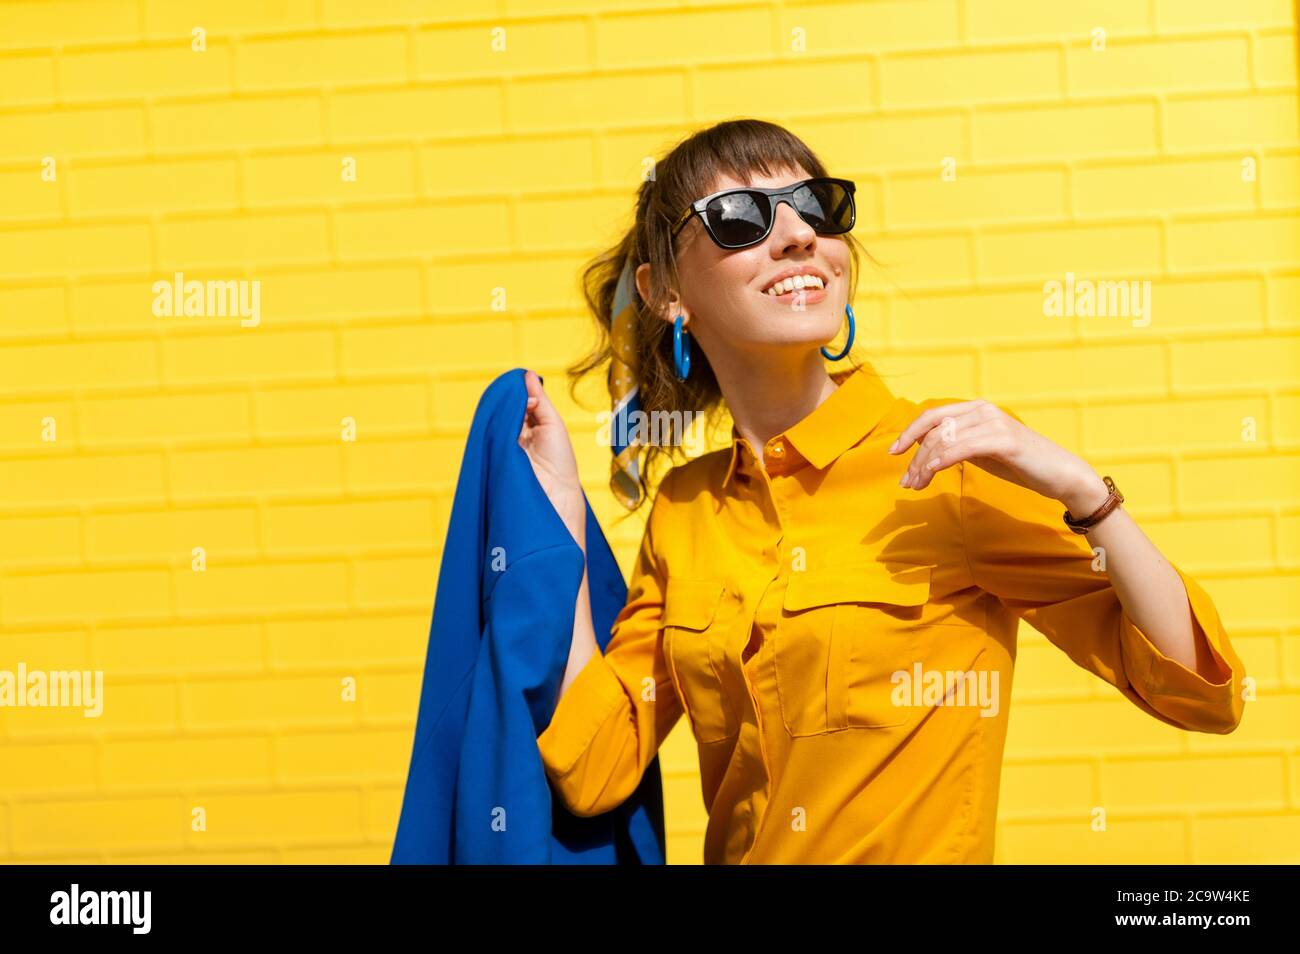 Fröhliches Mädchen vor dem Hintergrund einer hellgelben Wand in einem gelben Hemd mit einer abgebildeten Jacke. Lächelnd und glücklich. Stockfoto